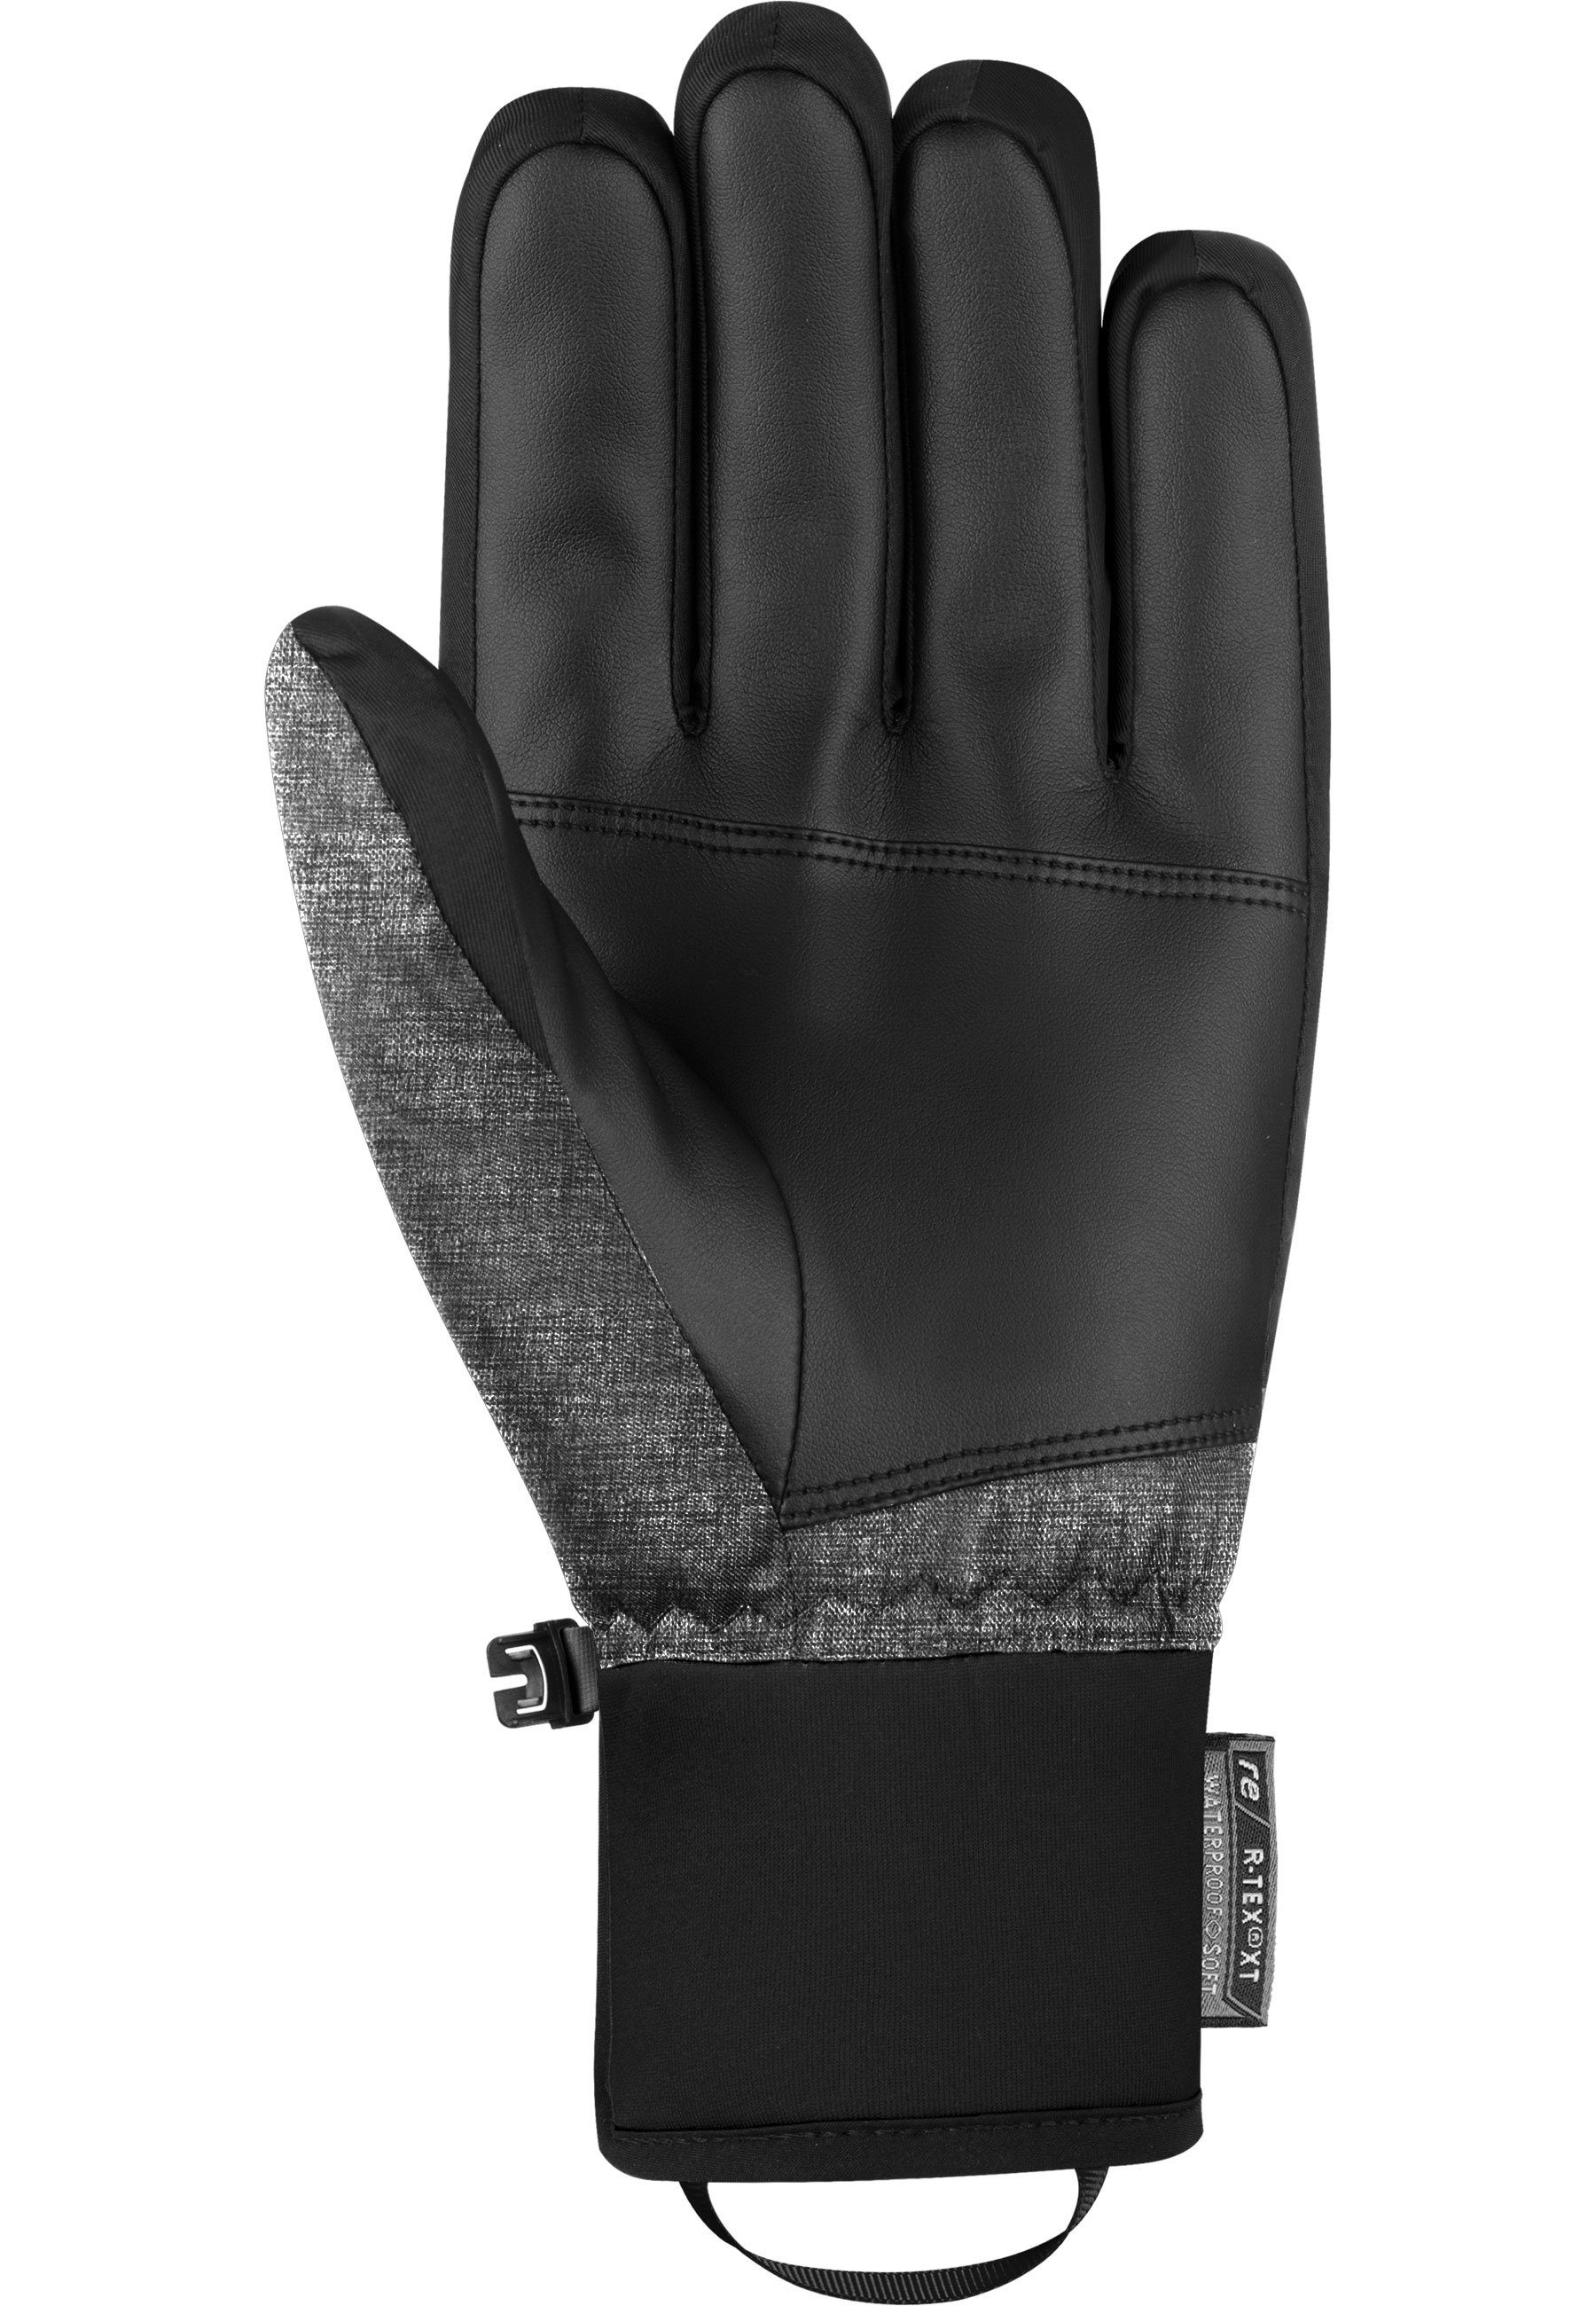 Reusch Skihandschuhe Venom R-TEX® Material und atmungsaktivem schwarz-grau XT aus wasserdichtem